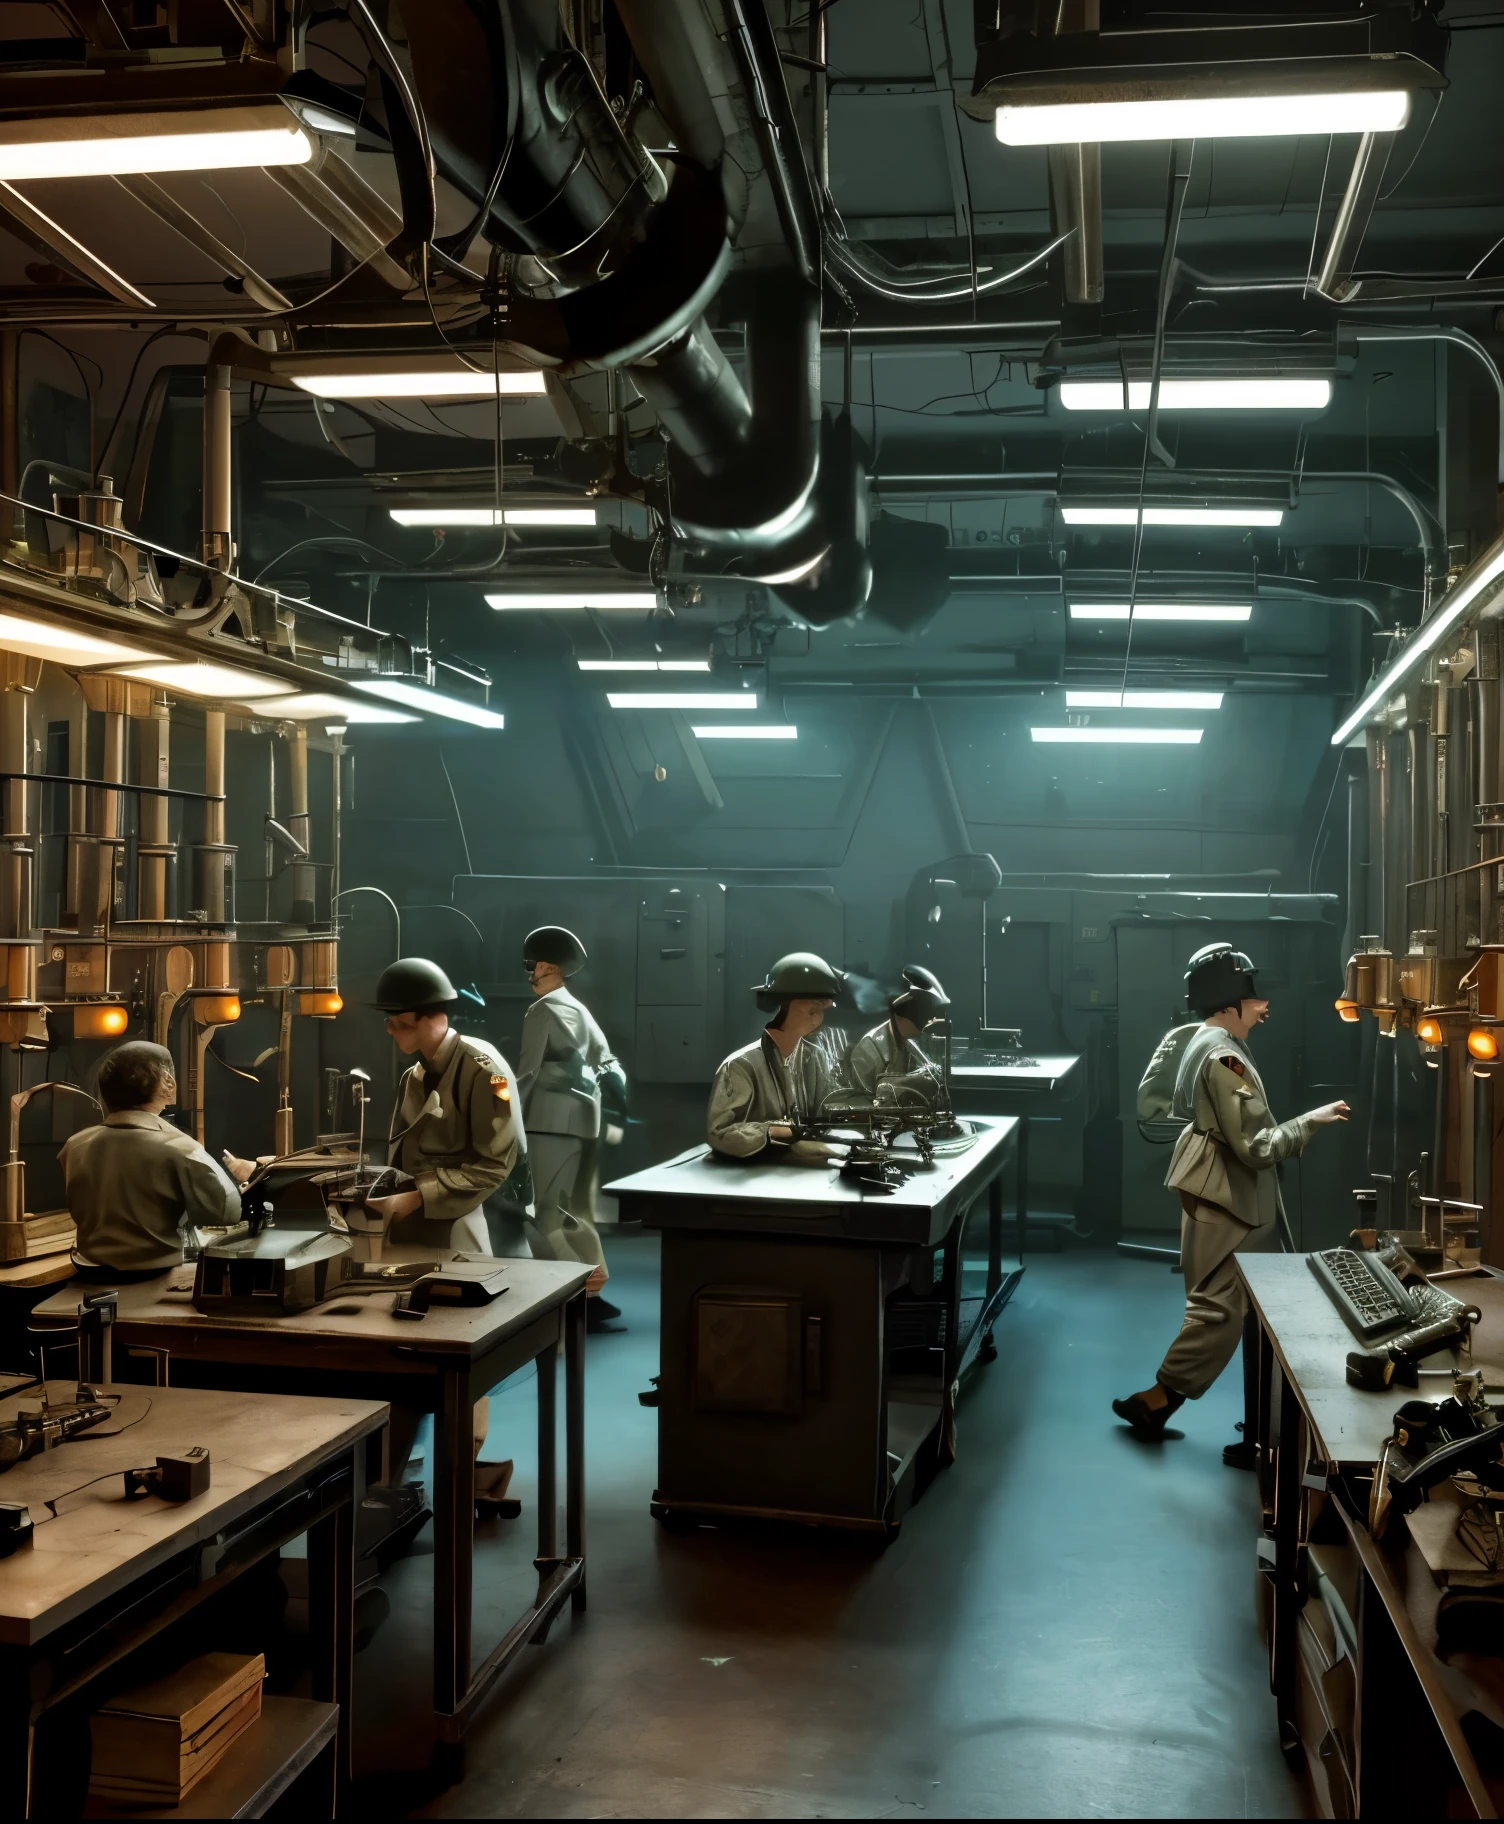  실험실 테이블 위에 두뇌가 늘어선 2차 세계대전 복고풍 공상과학 장면, 빈티지 과학 장비와 깜박이는 조명으로 둘러싸여 있습니다.